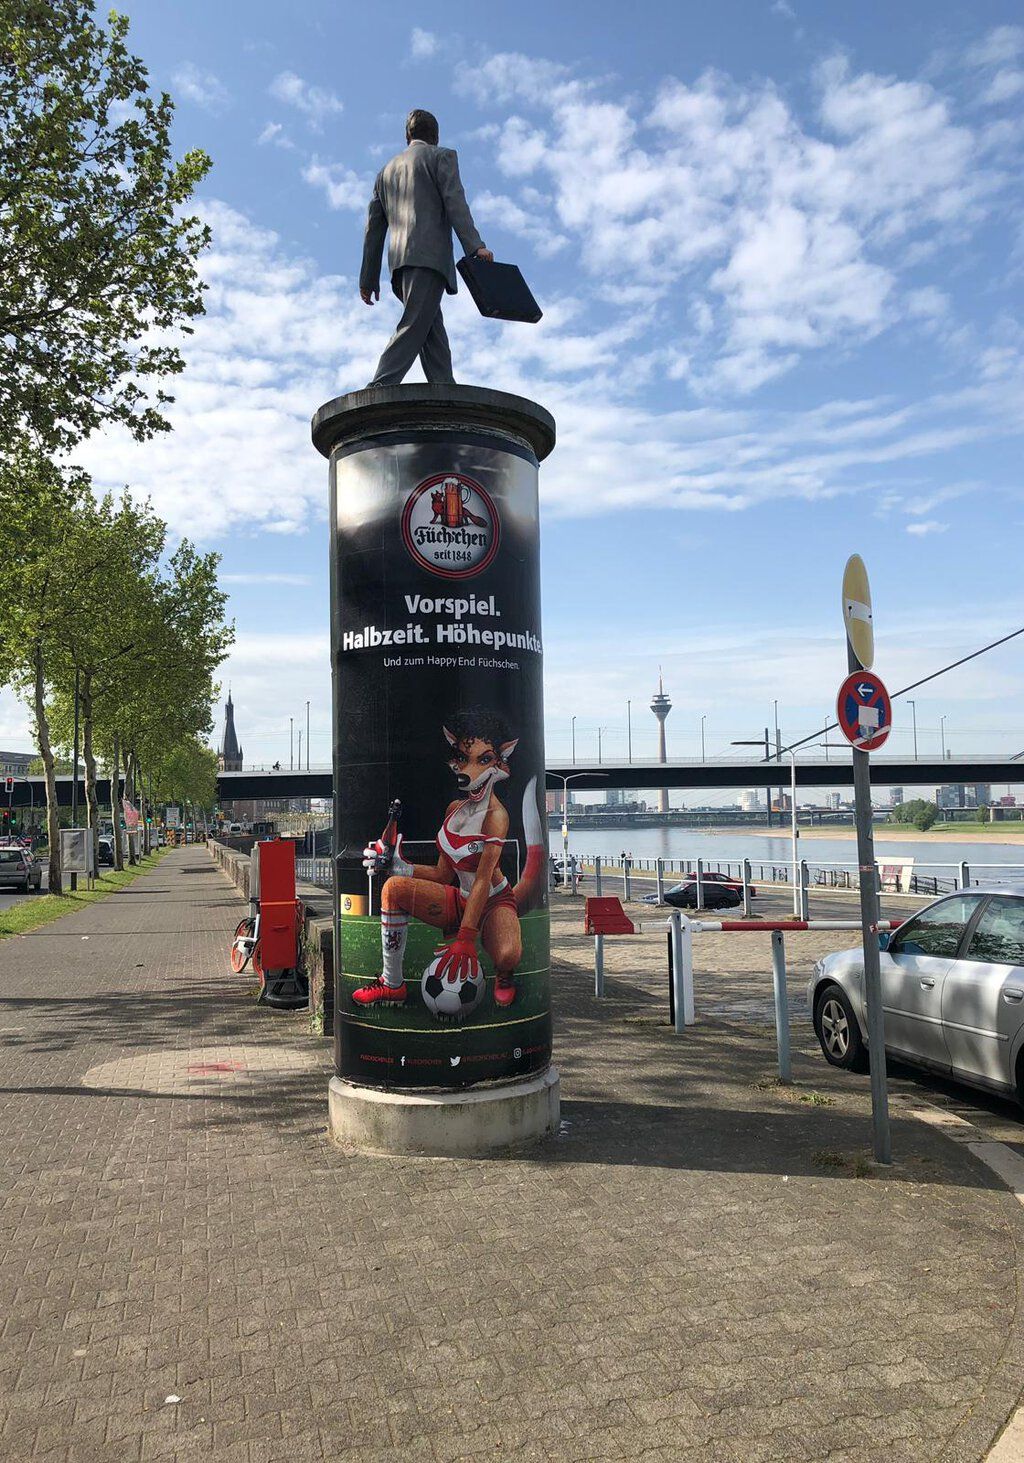 Werbeplakat der Brauerei Füchschen auf einer Litfaßsäule am Rheinufer in Düsseldor